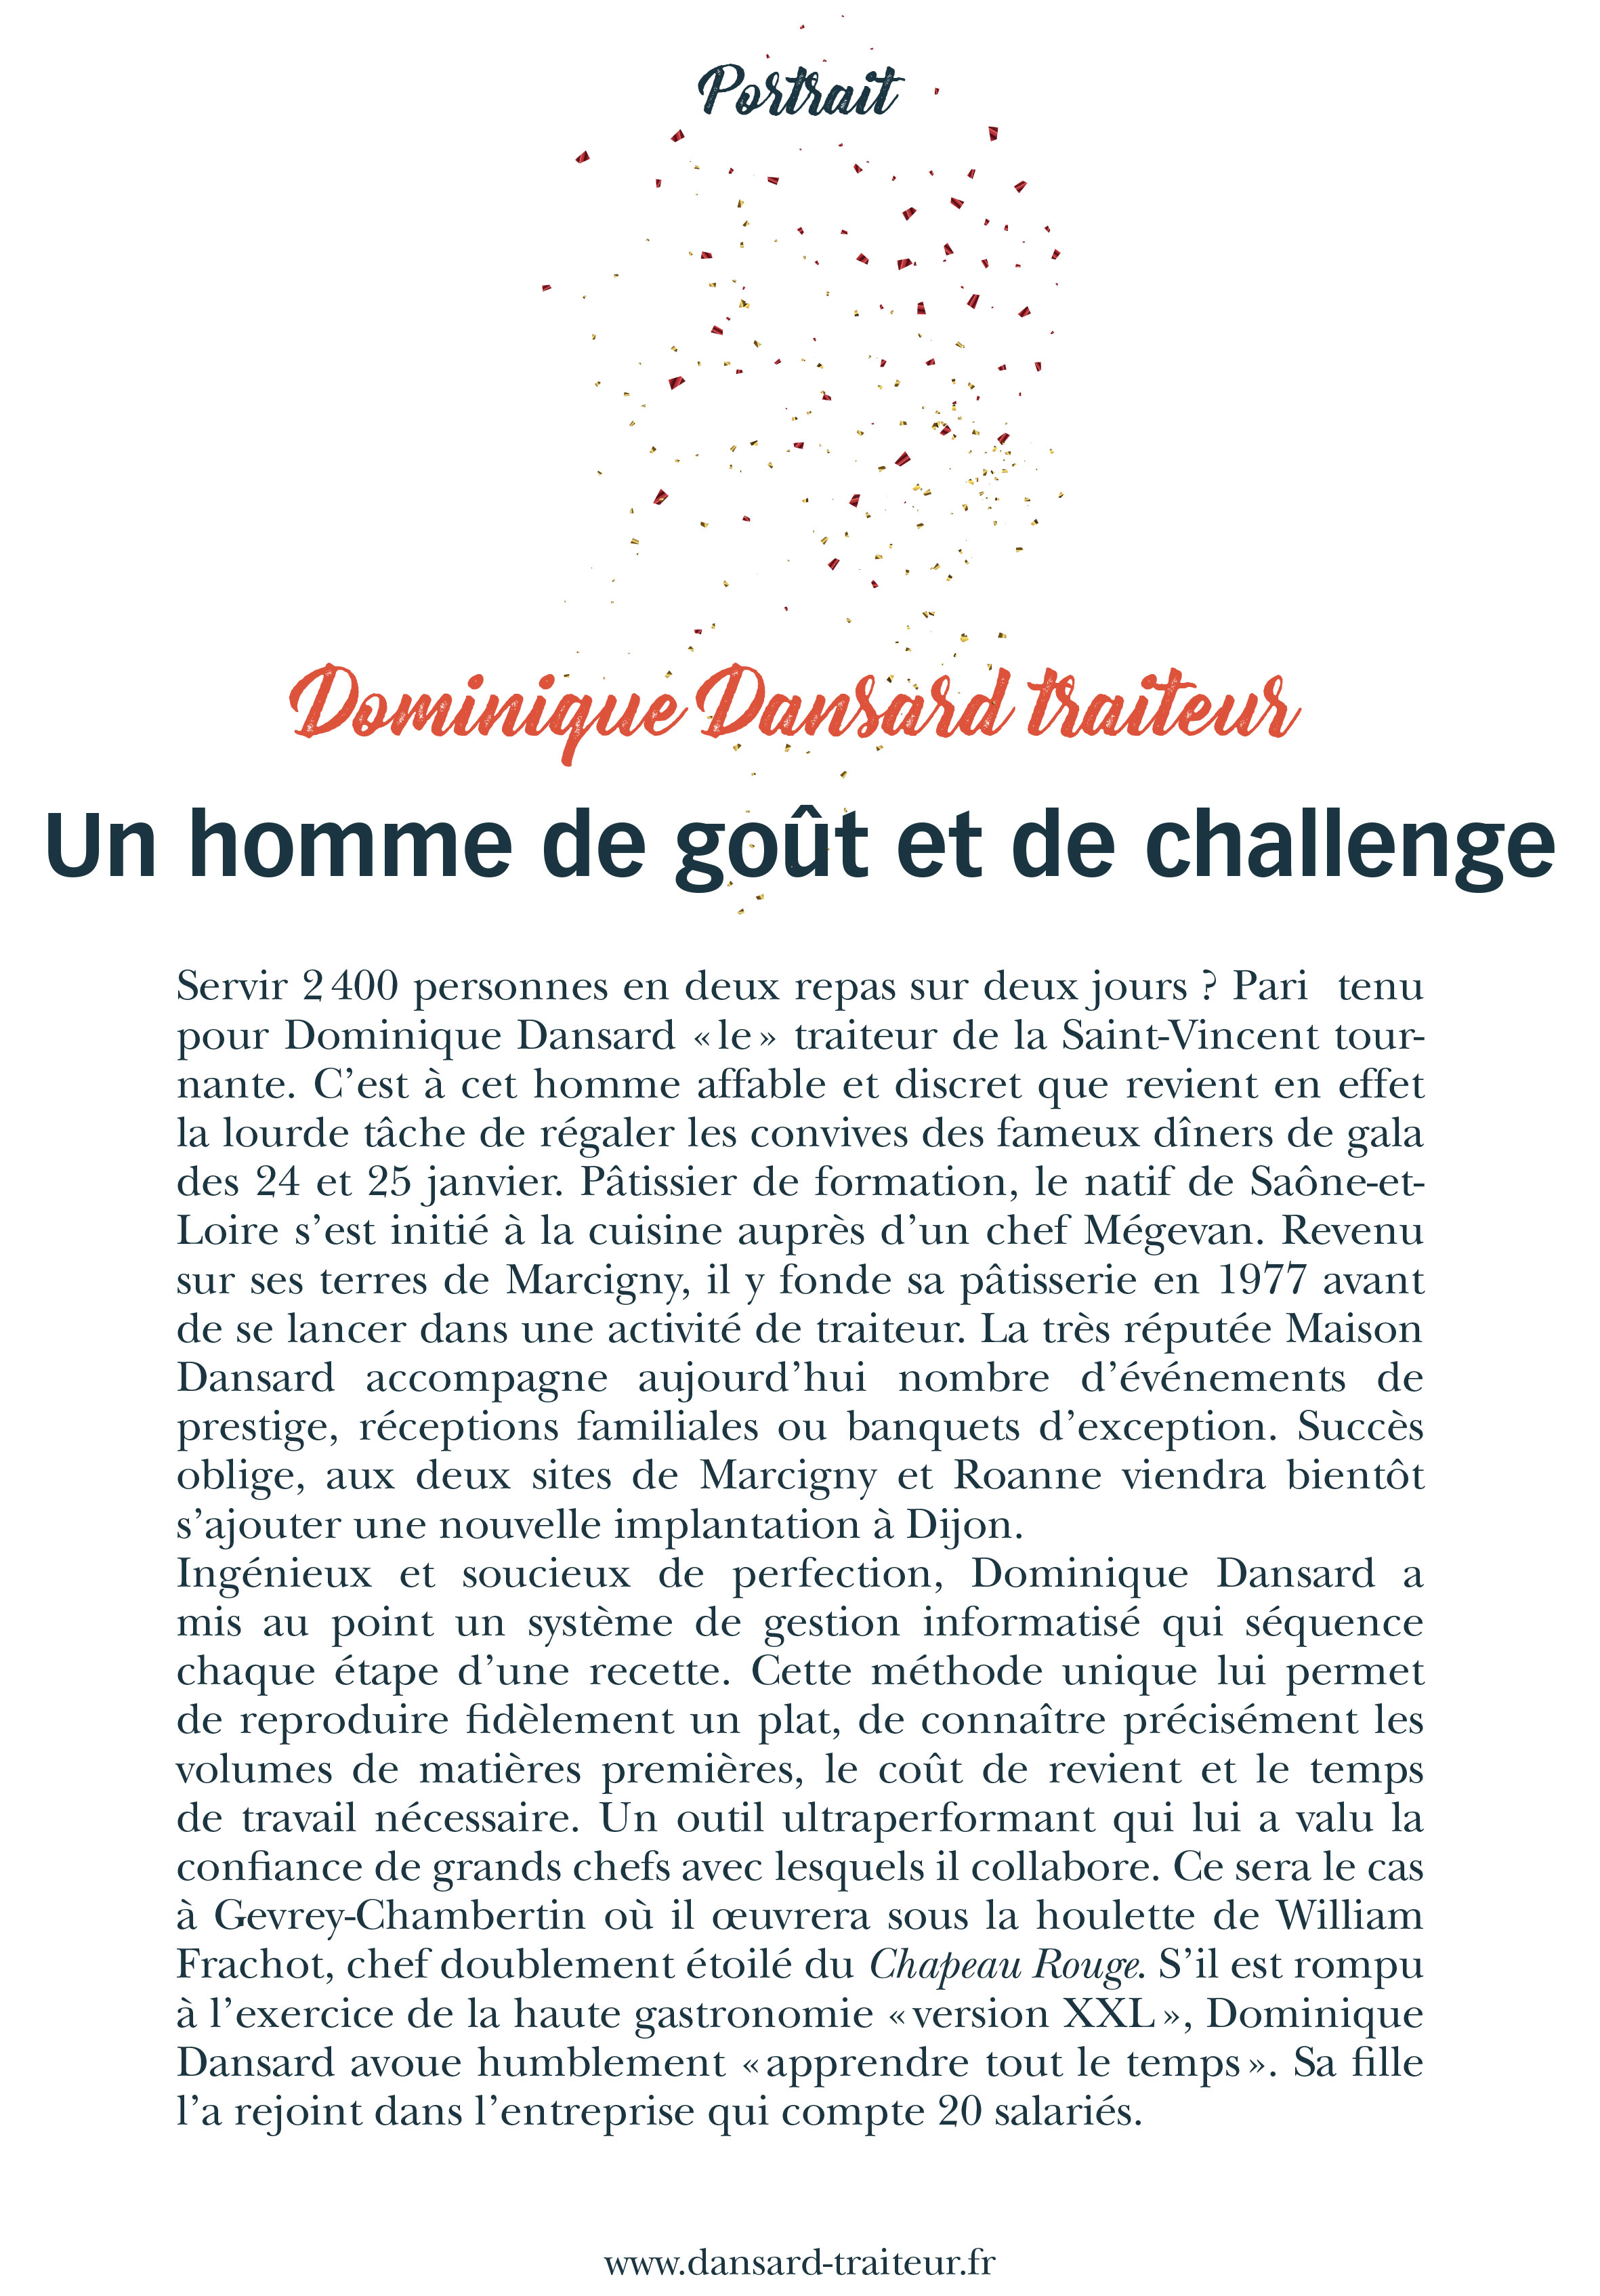 Janvier 2020 - Dominique DANSARD - Un homme de goût et de challenge